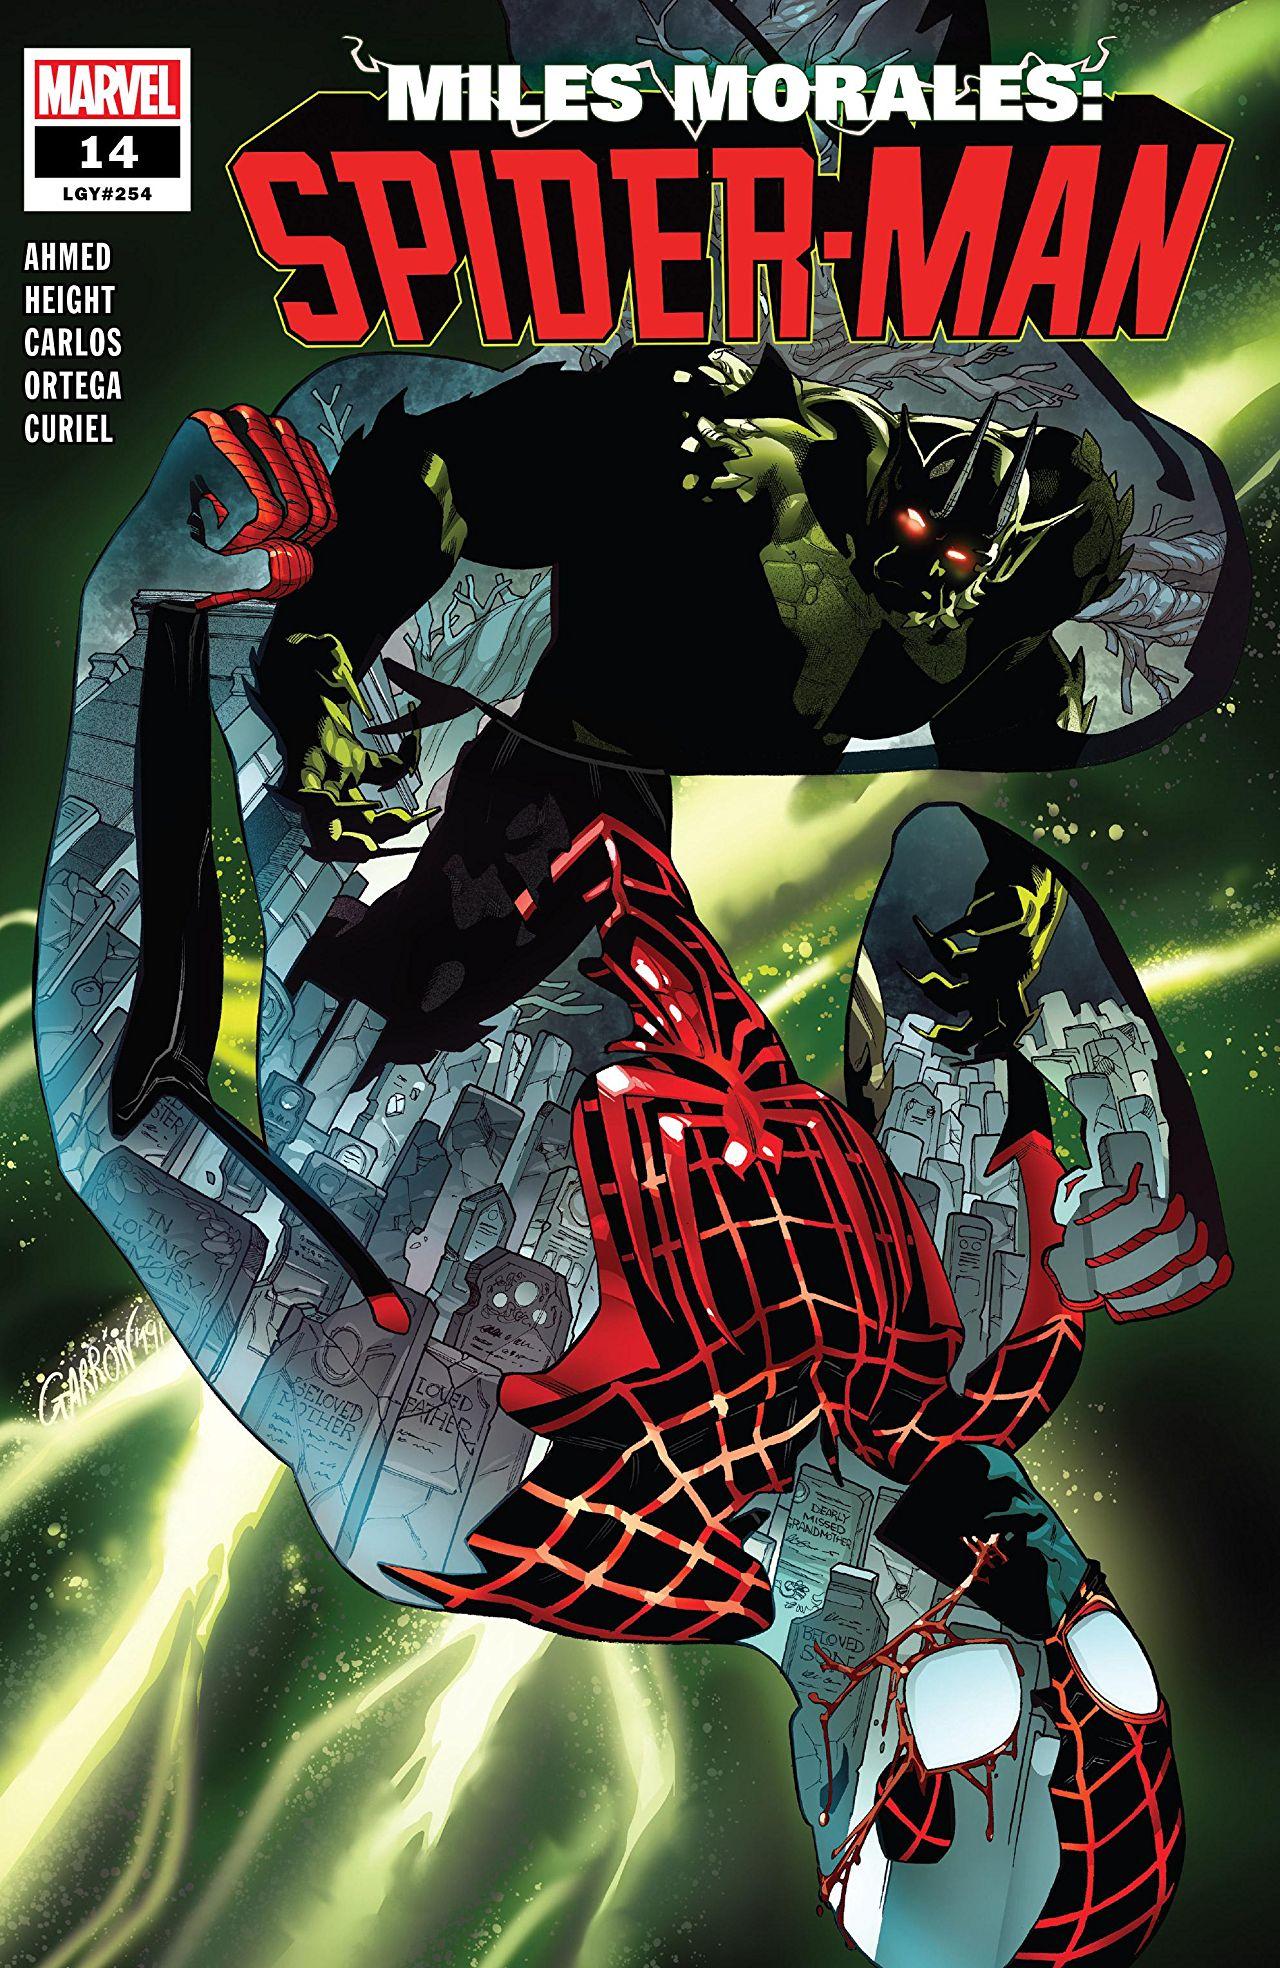 Miles Morales: Spider-Man Vol. 1 #14